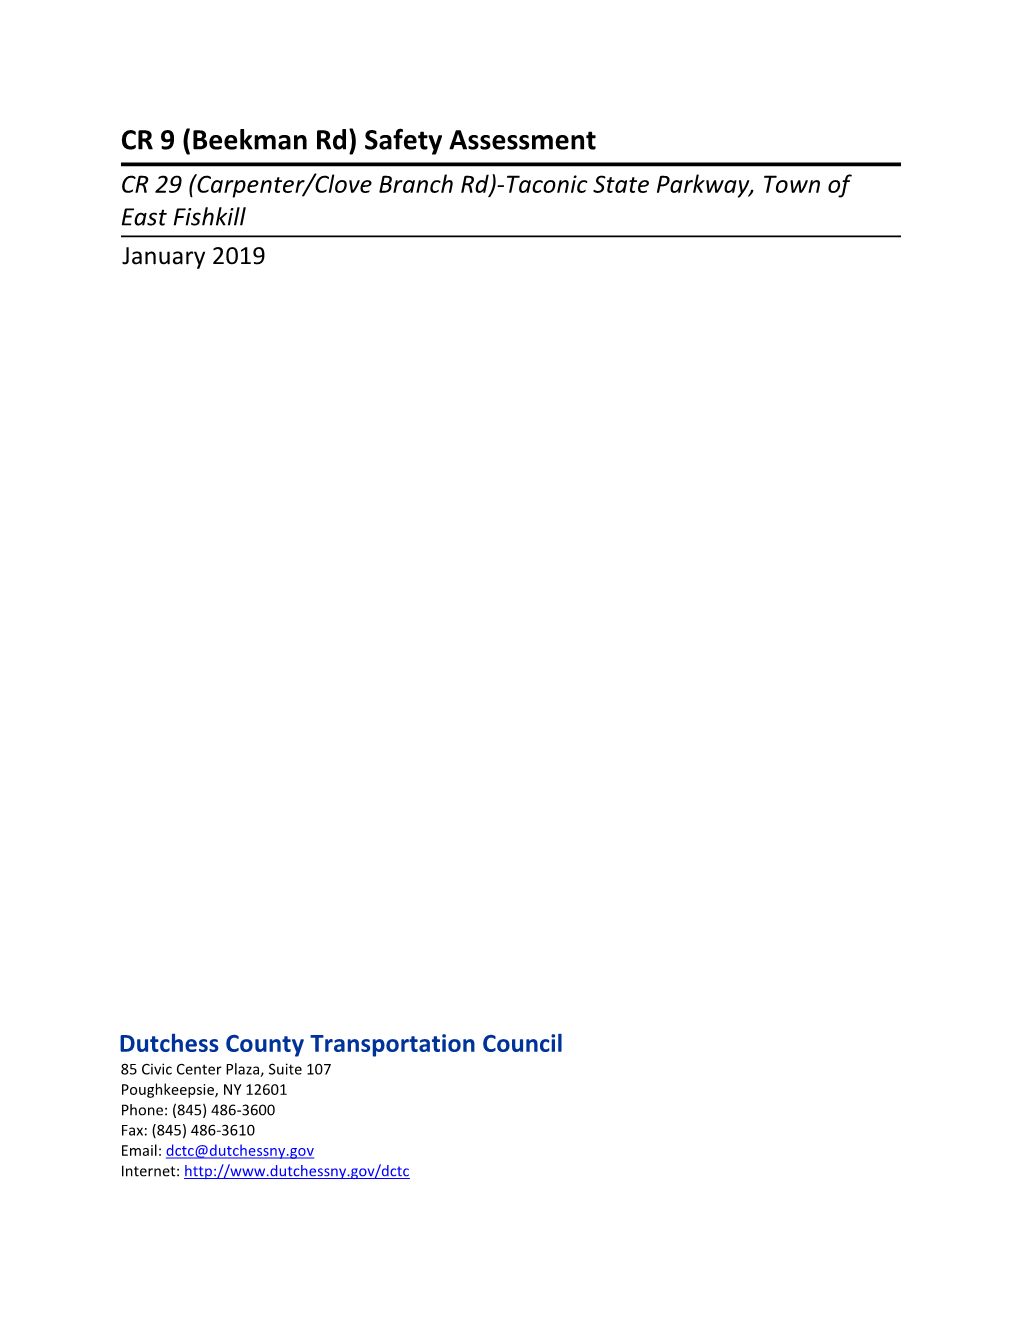 FINAL CR 9 (Beekman Rd) Safety Assessment Report